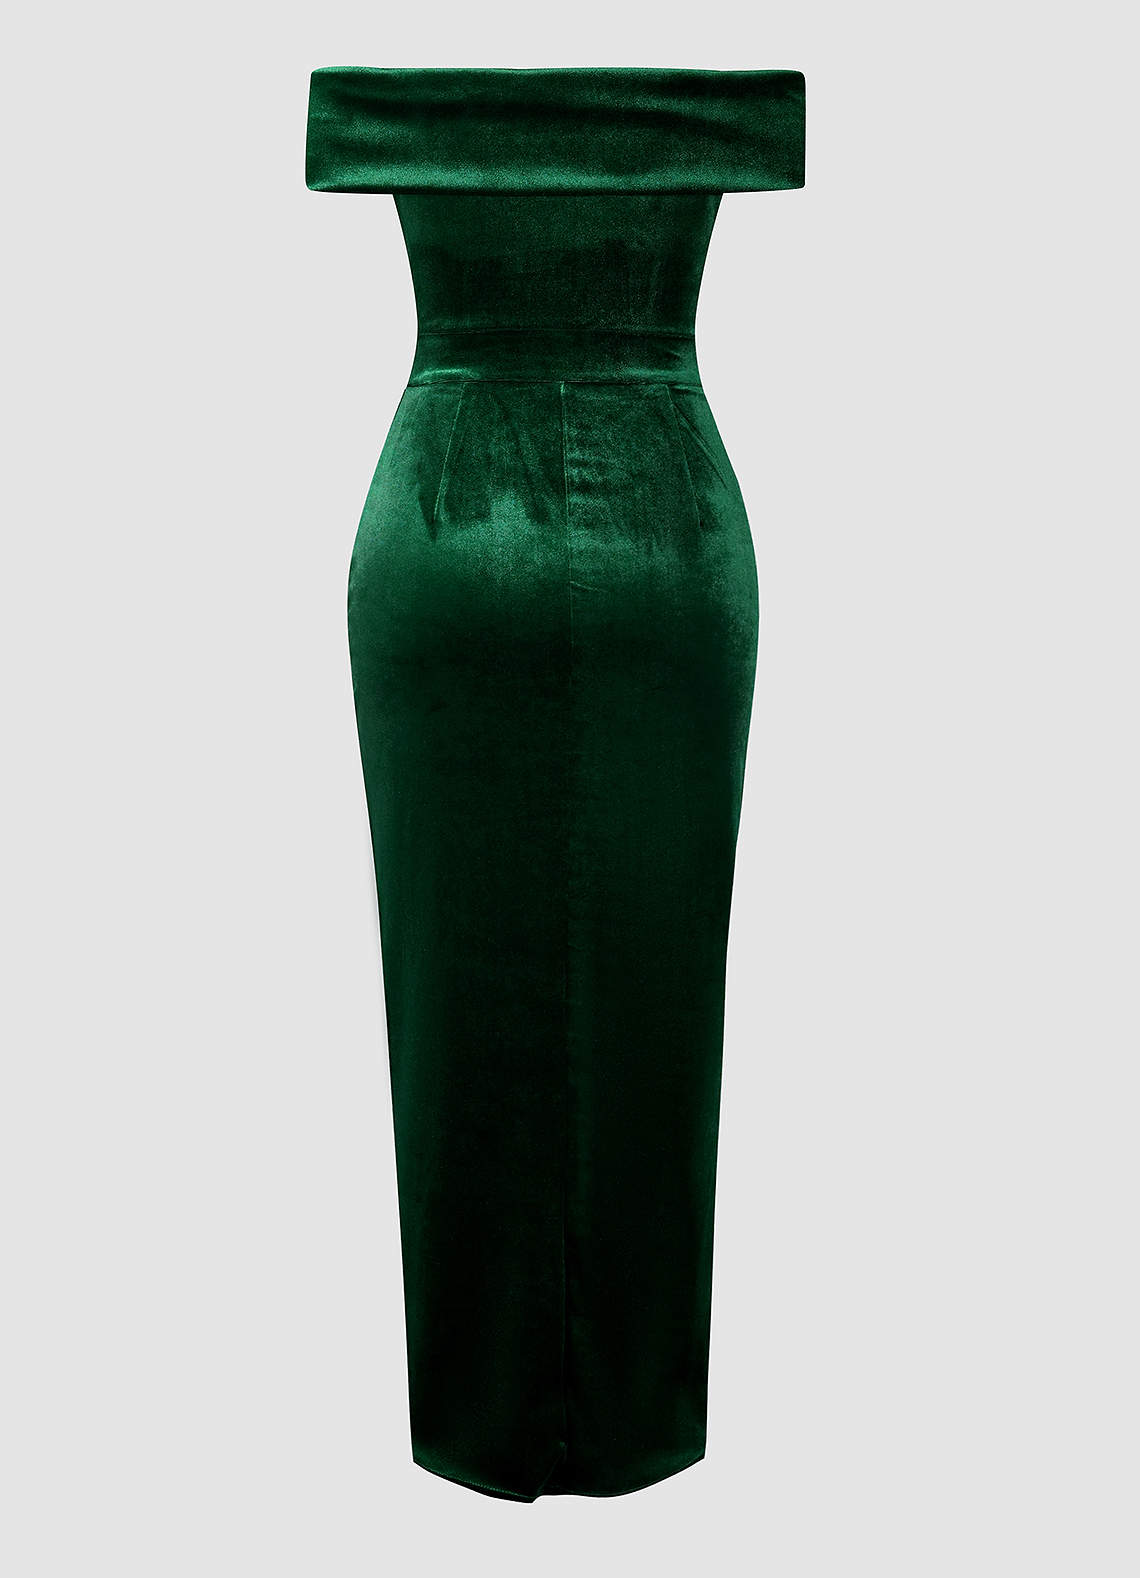 Osprey Dark Emerald Velvet Off-The-Shoulder Tulip Dress image1